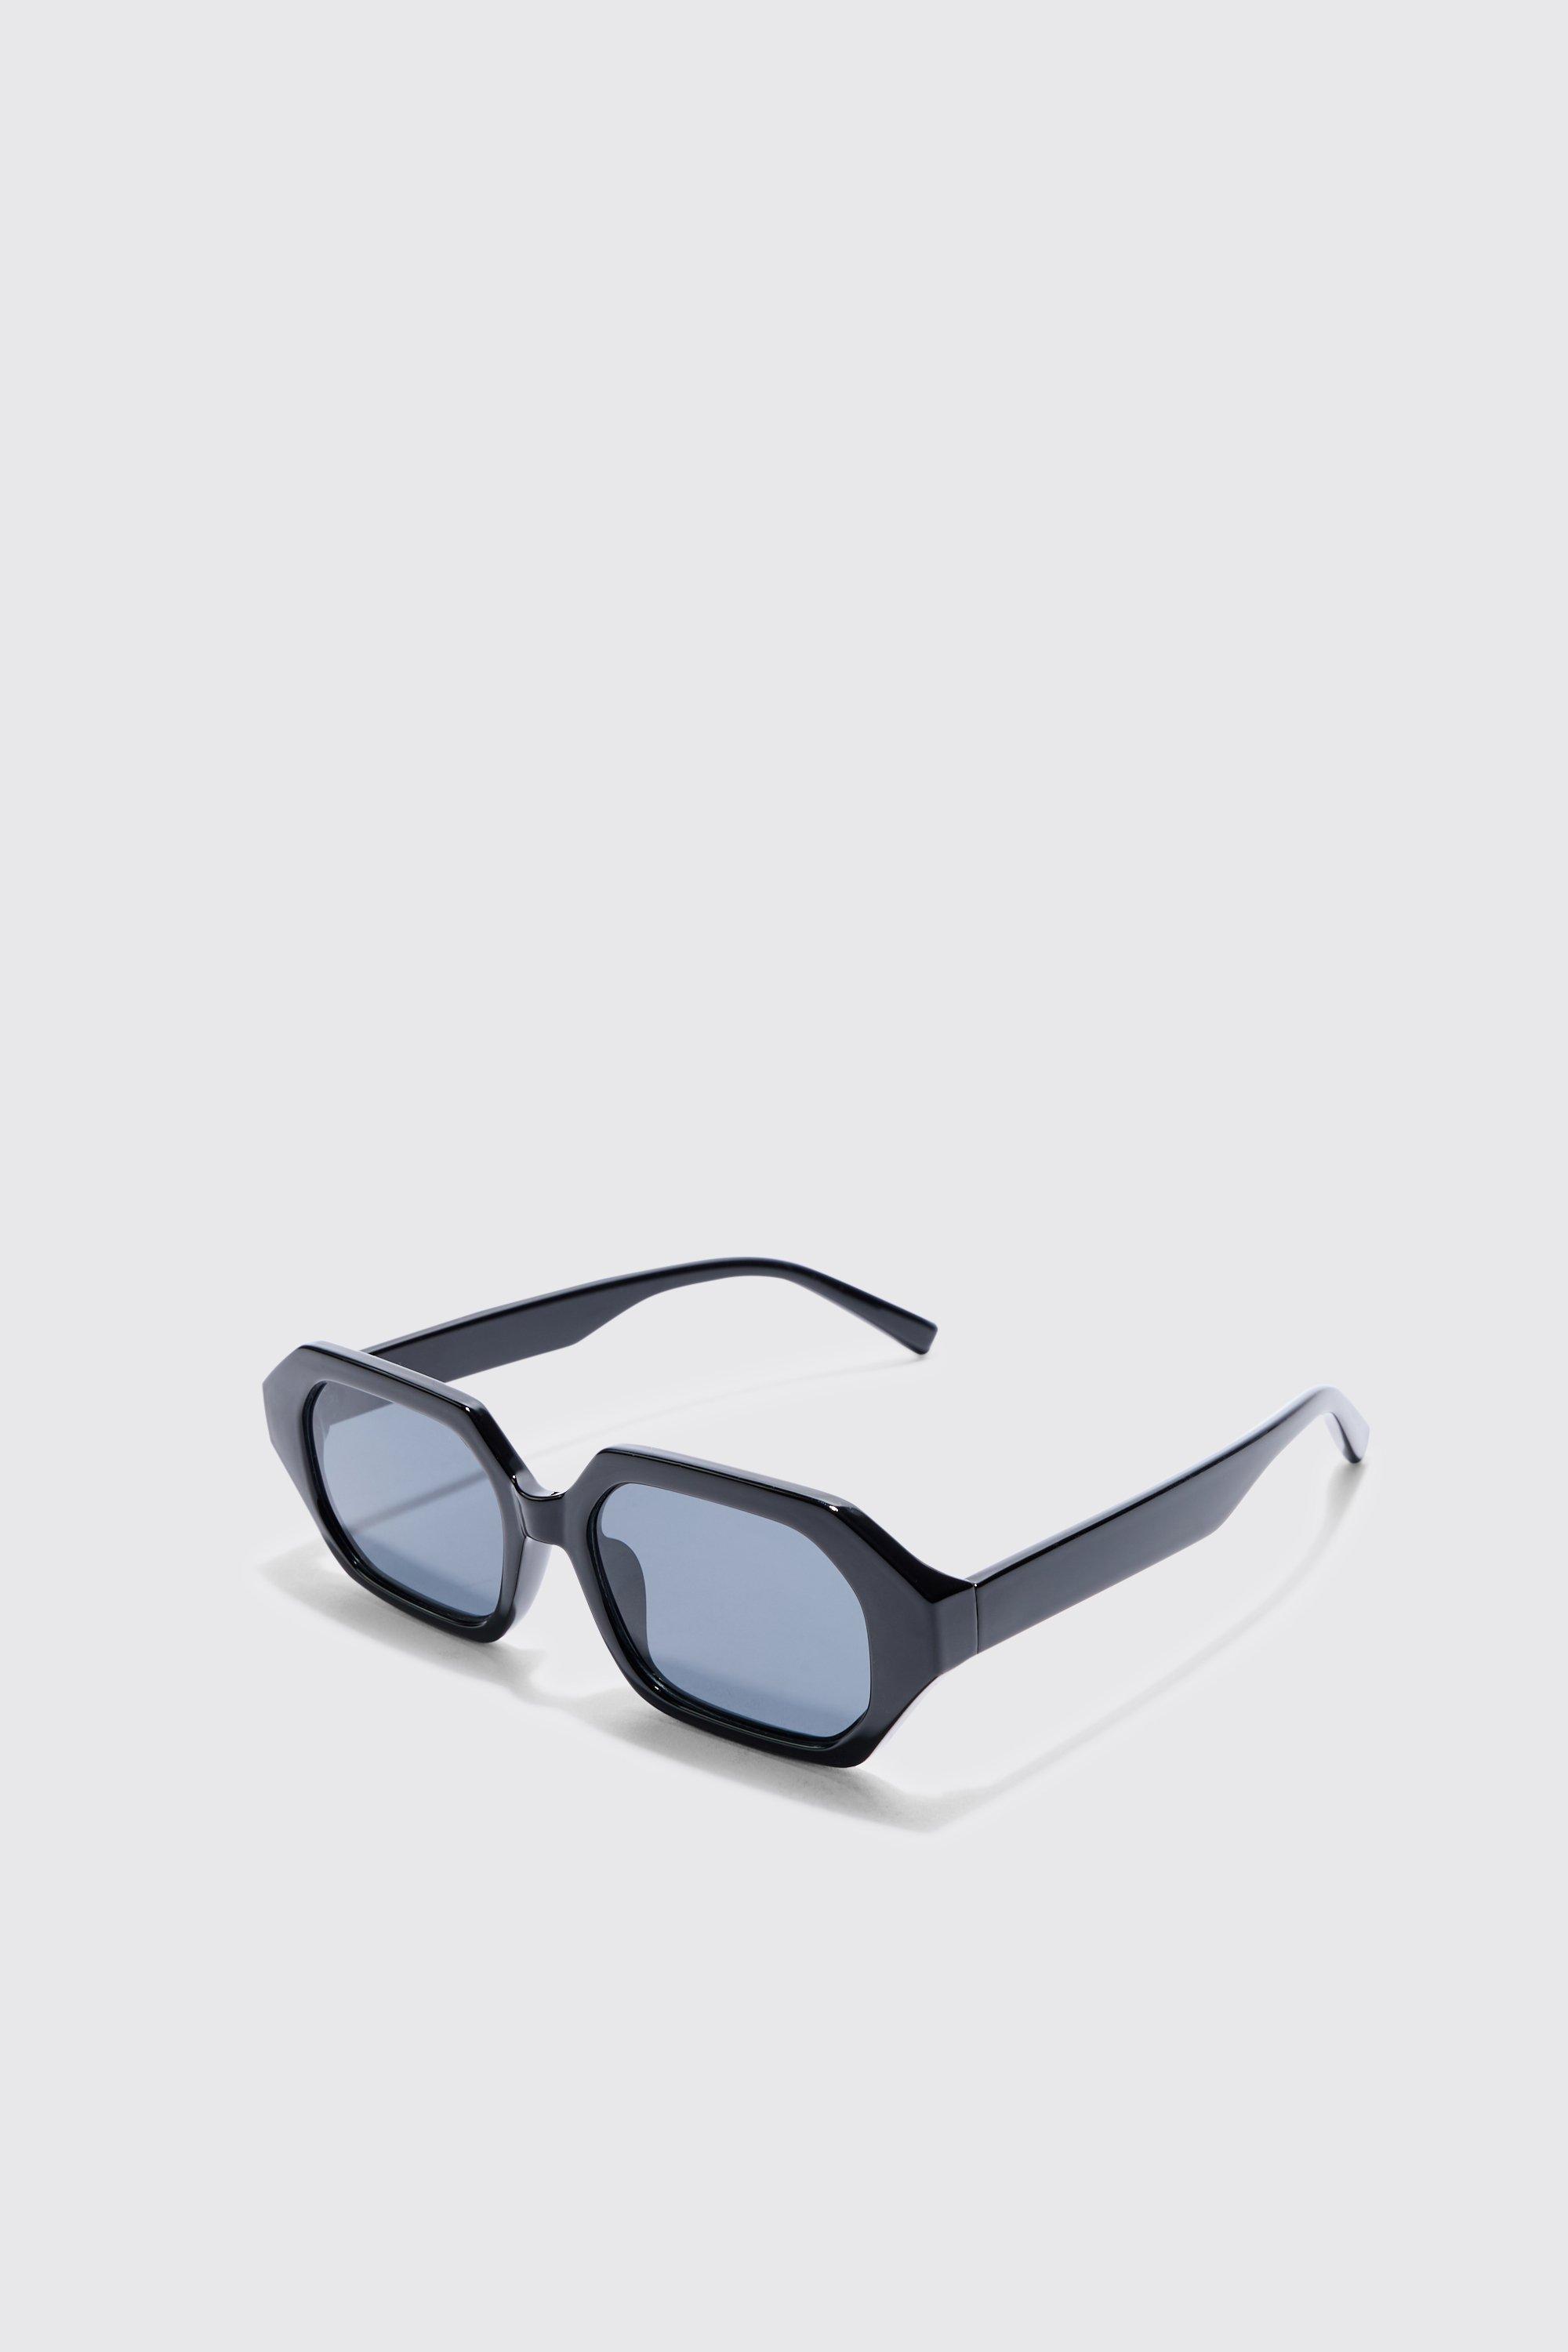 Image of Chunky Hexagonal Sunglasses In Black, Nero